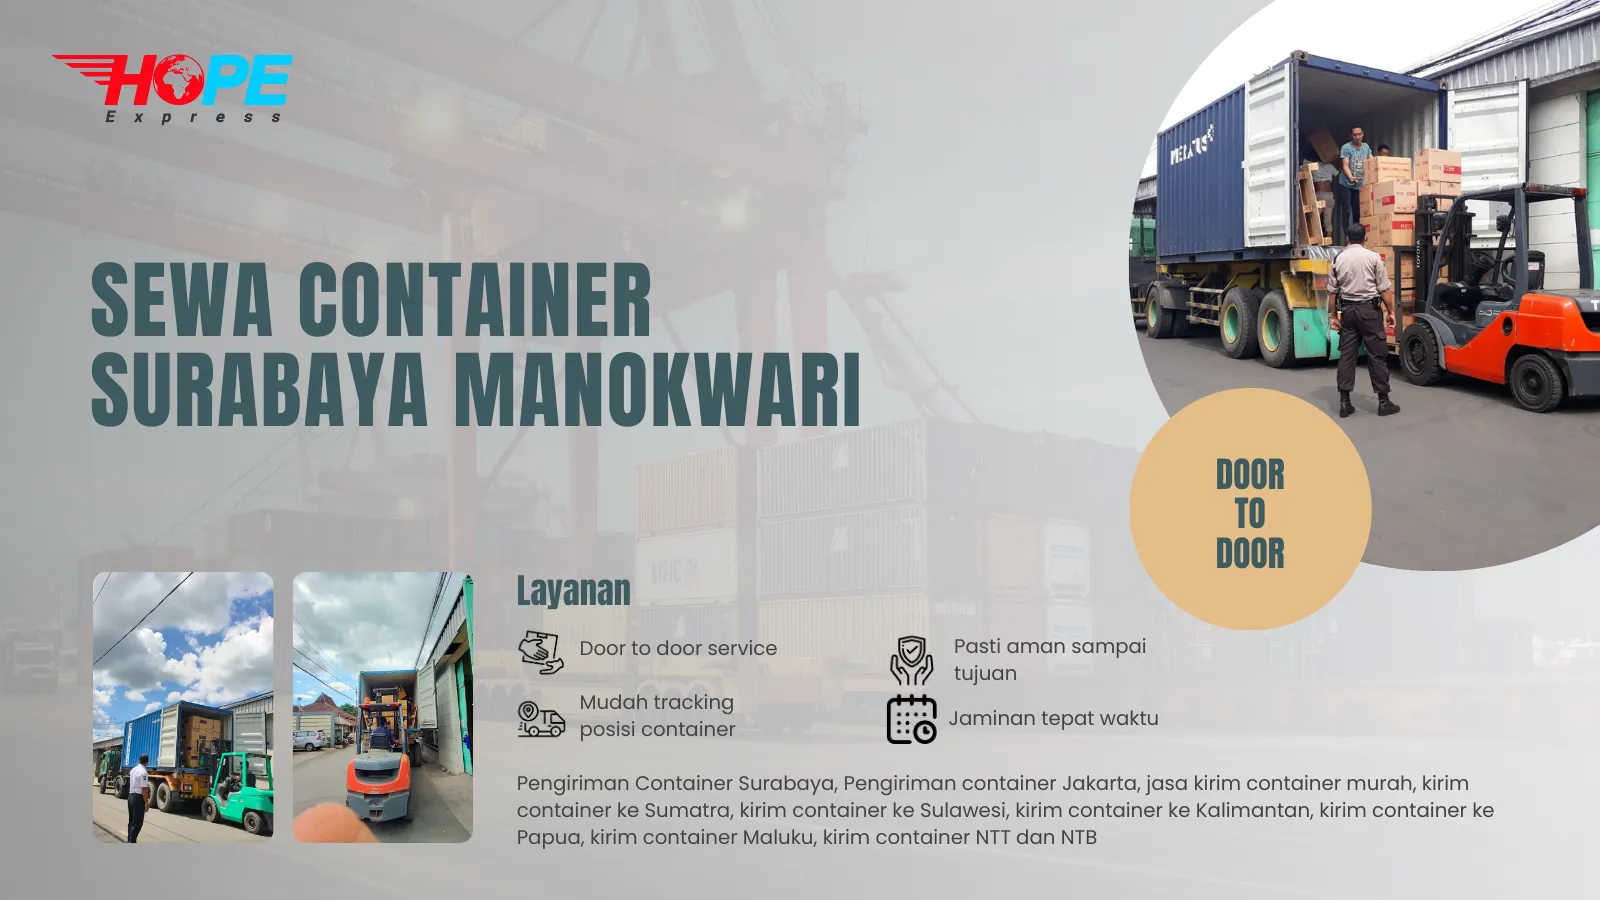 Sewa Container Surabaya Manokwari